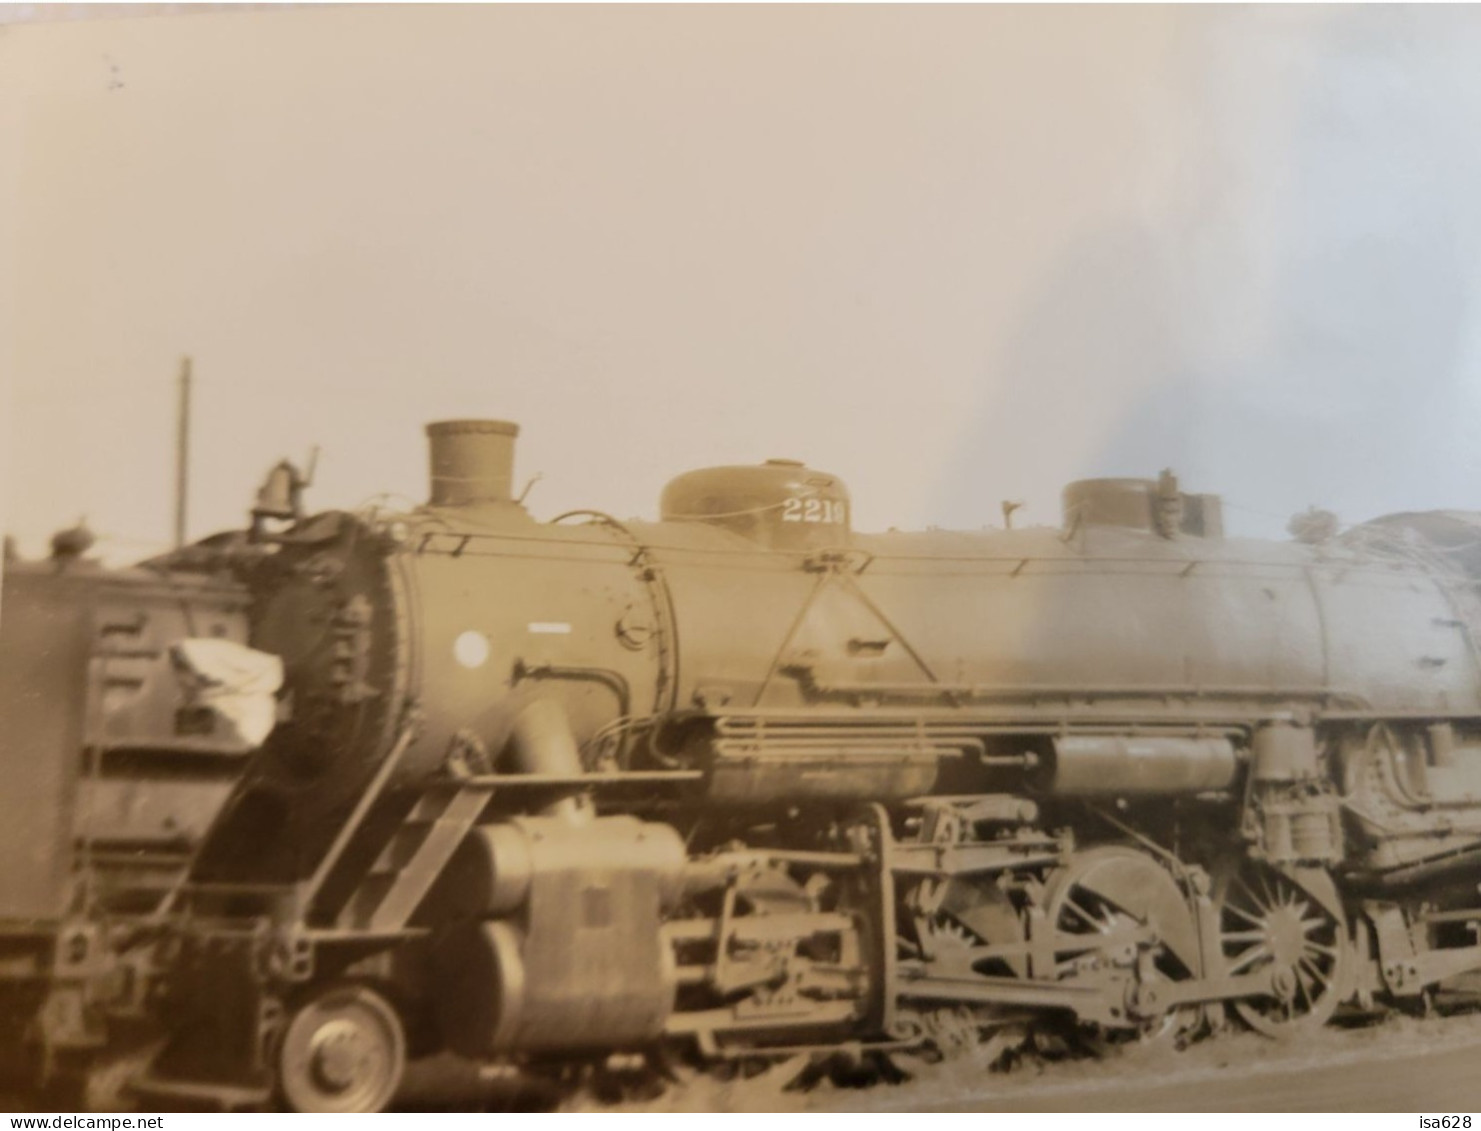 ancienne carte postale photo de train  iowa  a definir